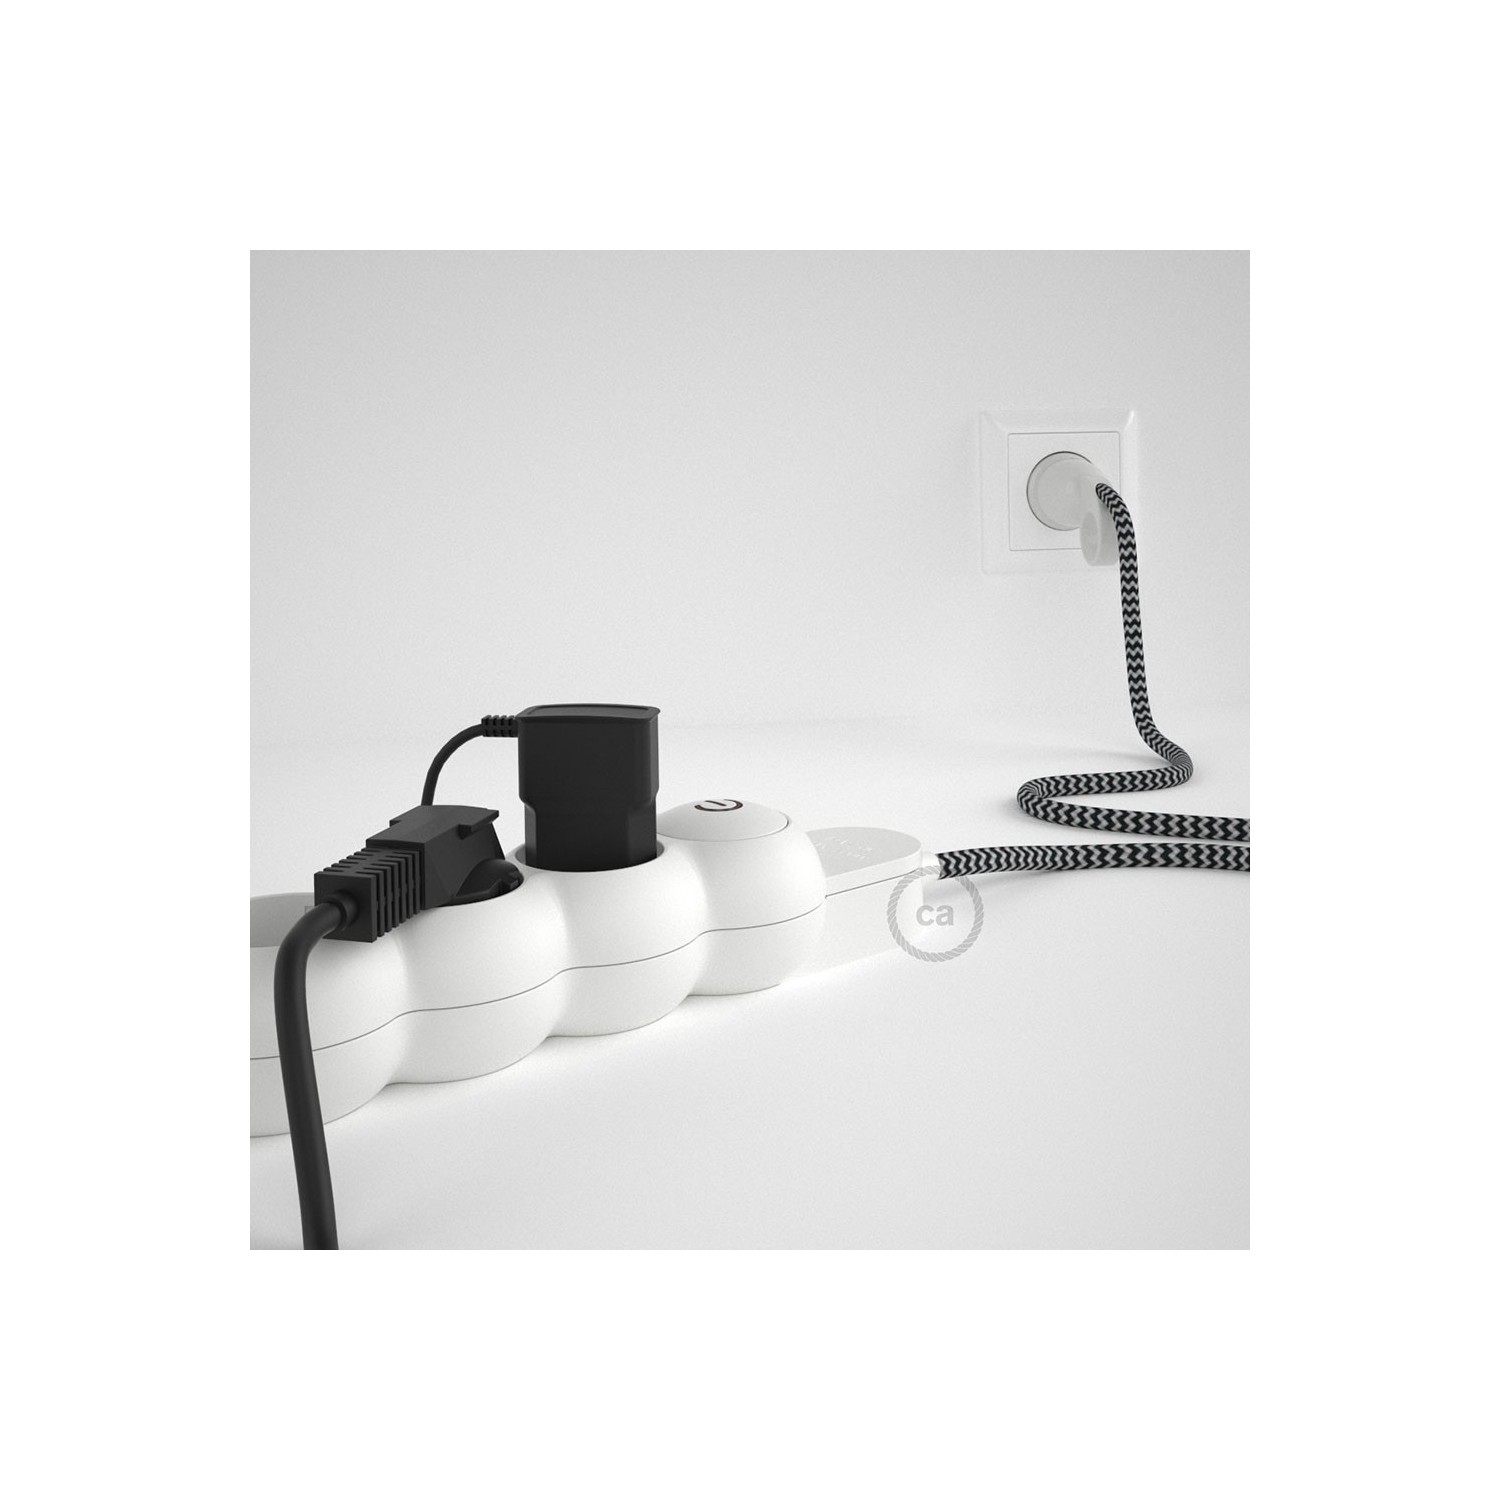 Stekkerdoos met strijkijzersnoer van zigzag zwart viscose RZ04 en randaarde stekker met comfortabele "ring" grip